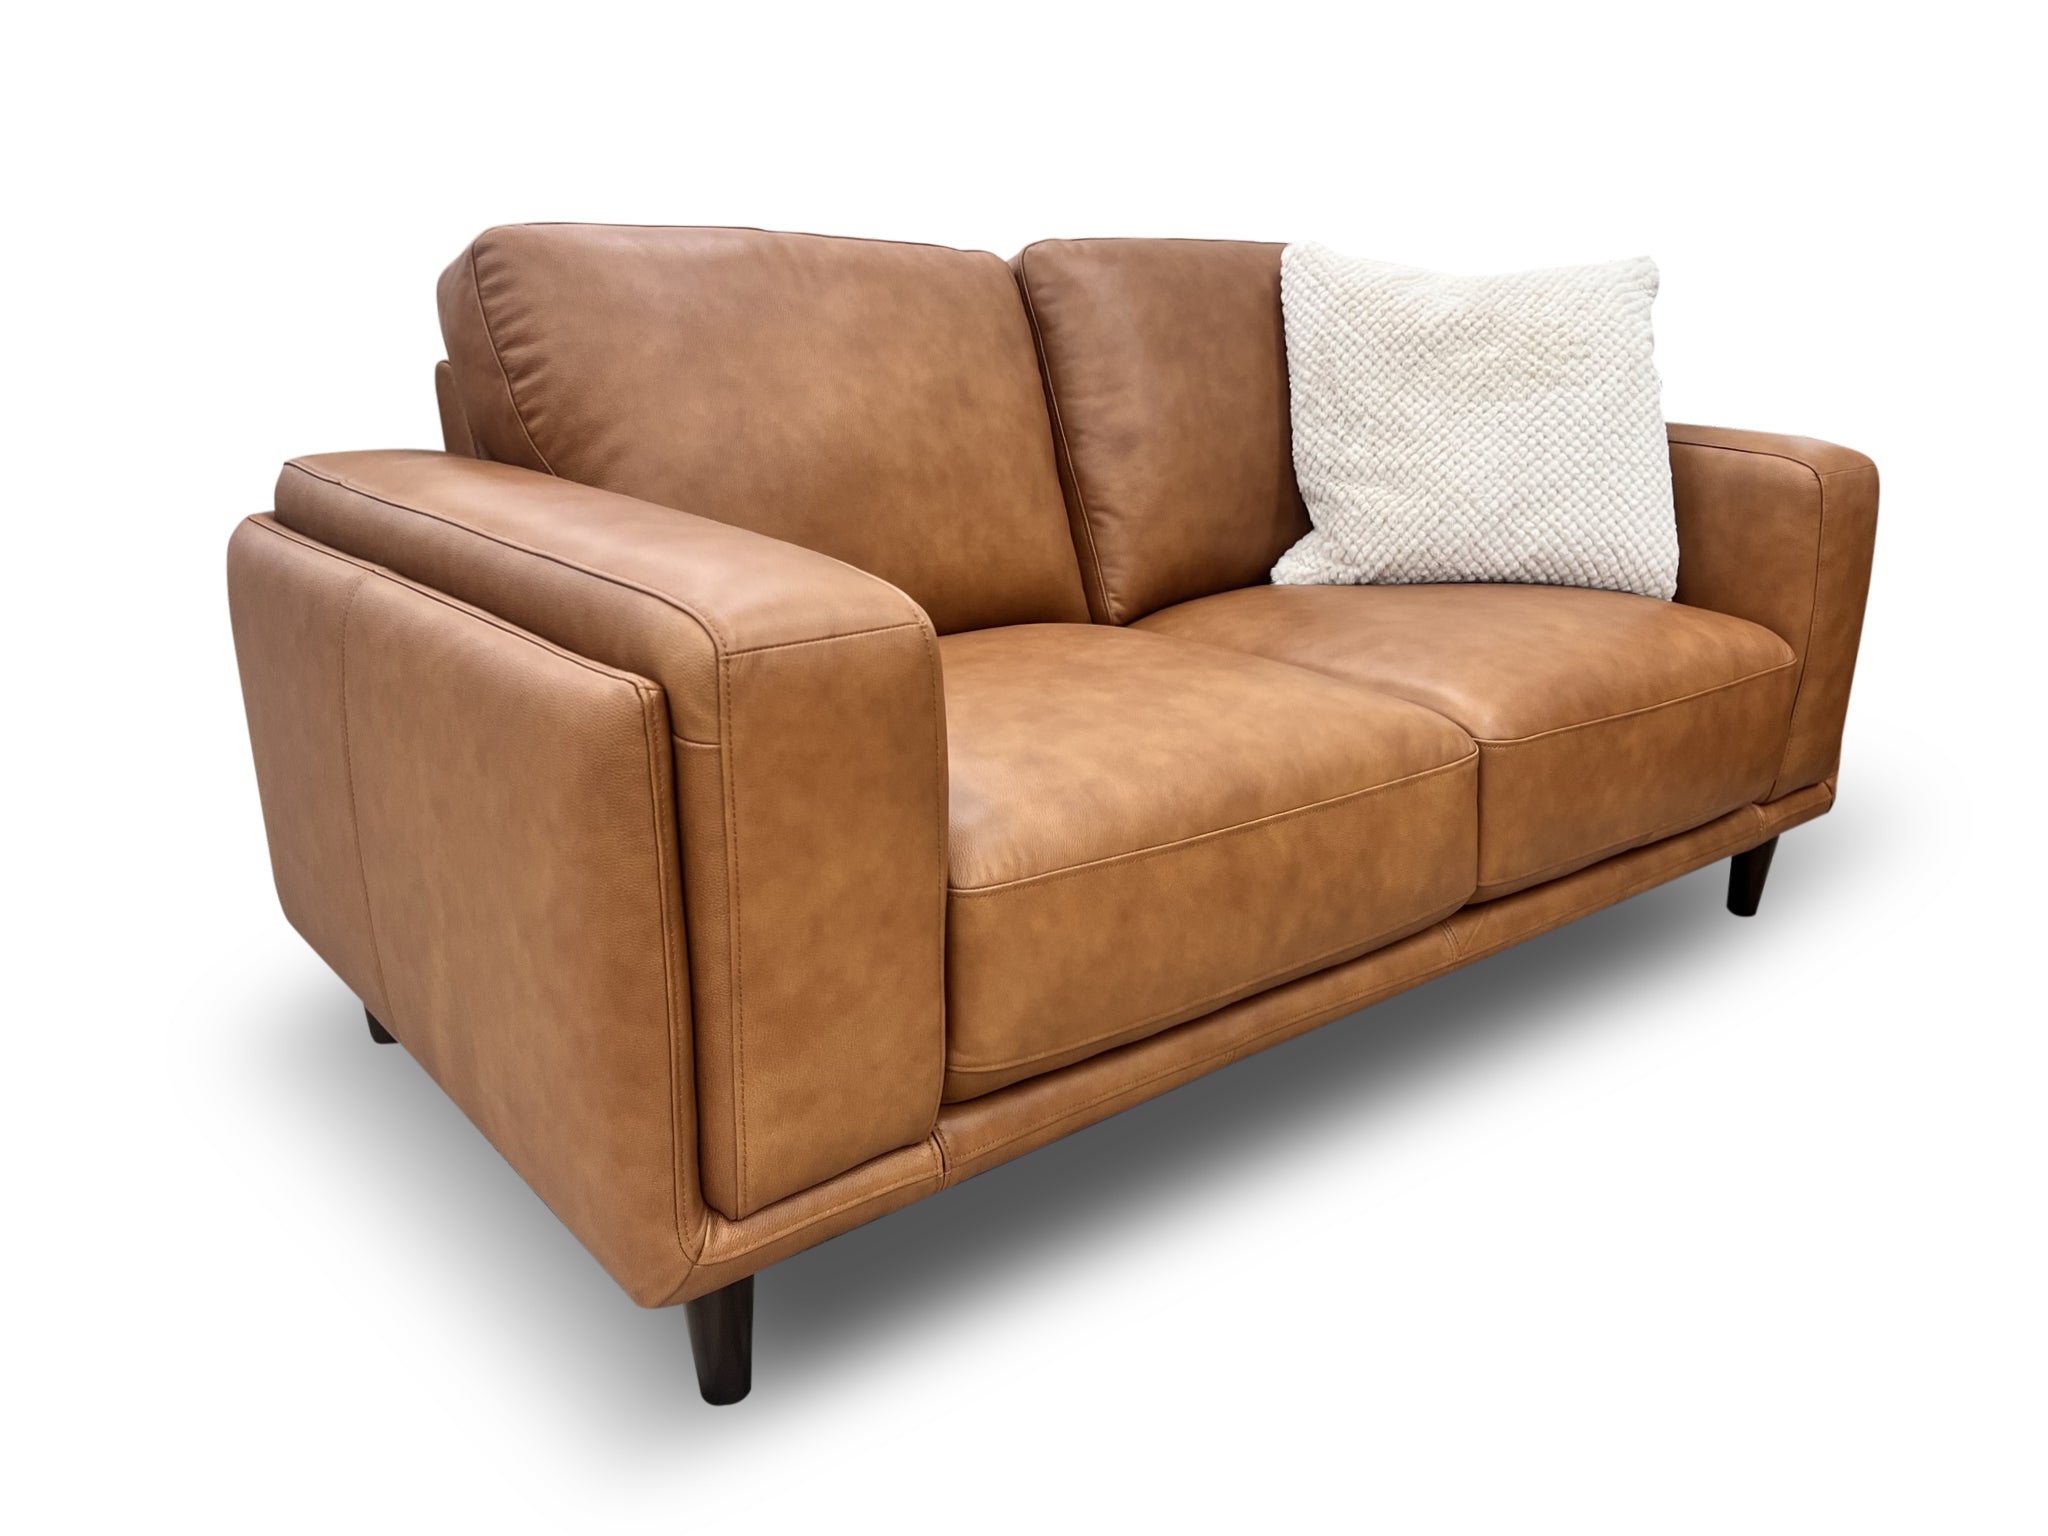 Daintree 2 seater sofa in tan leather